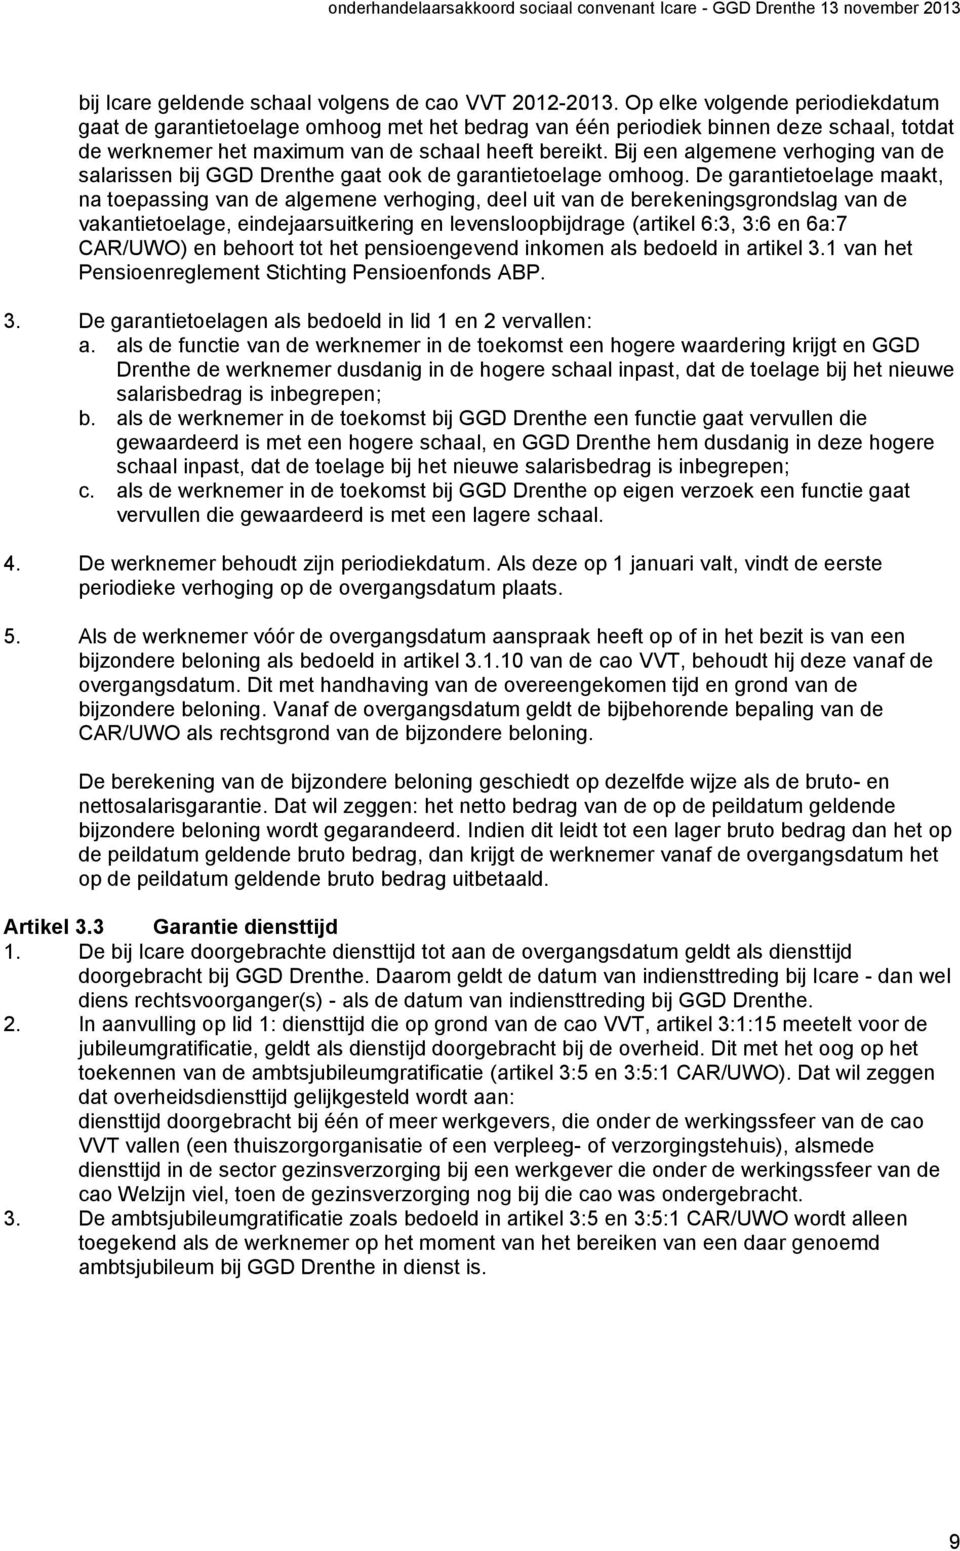 Bij een algemene verhoging van de salarissen bij GGD Drenthe gaat ook de garantietoelage omhoog.